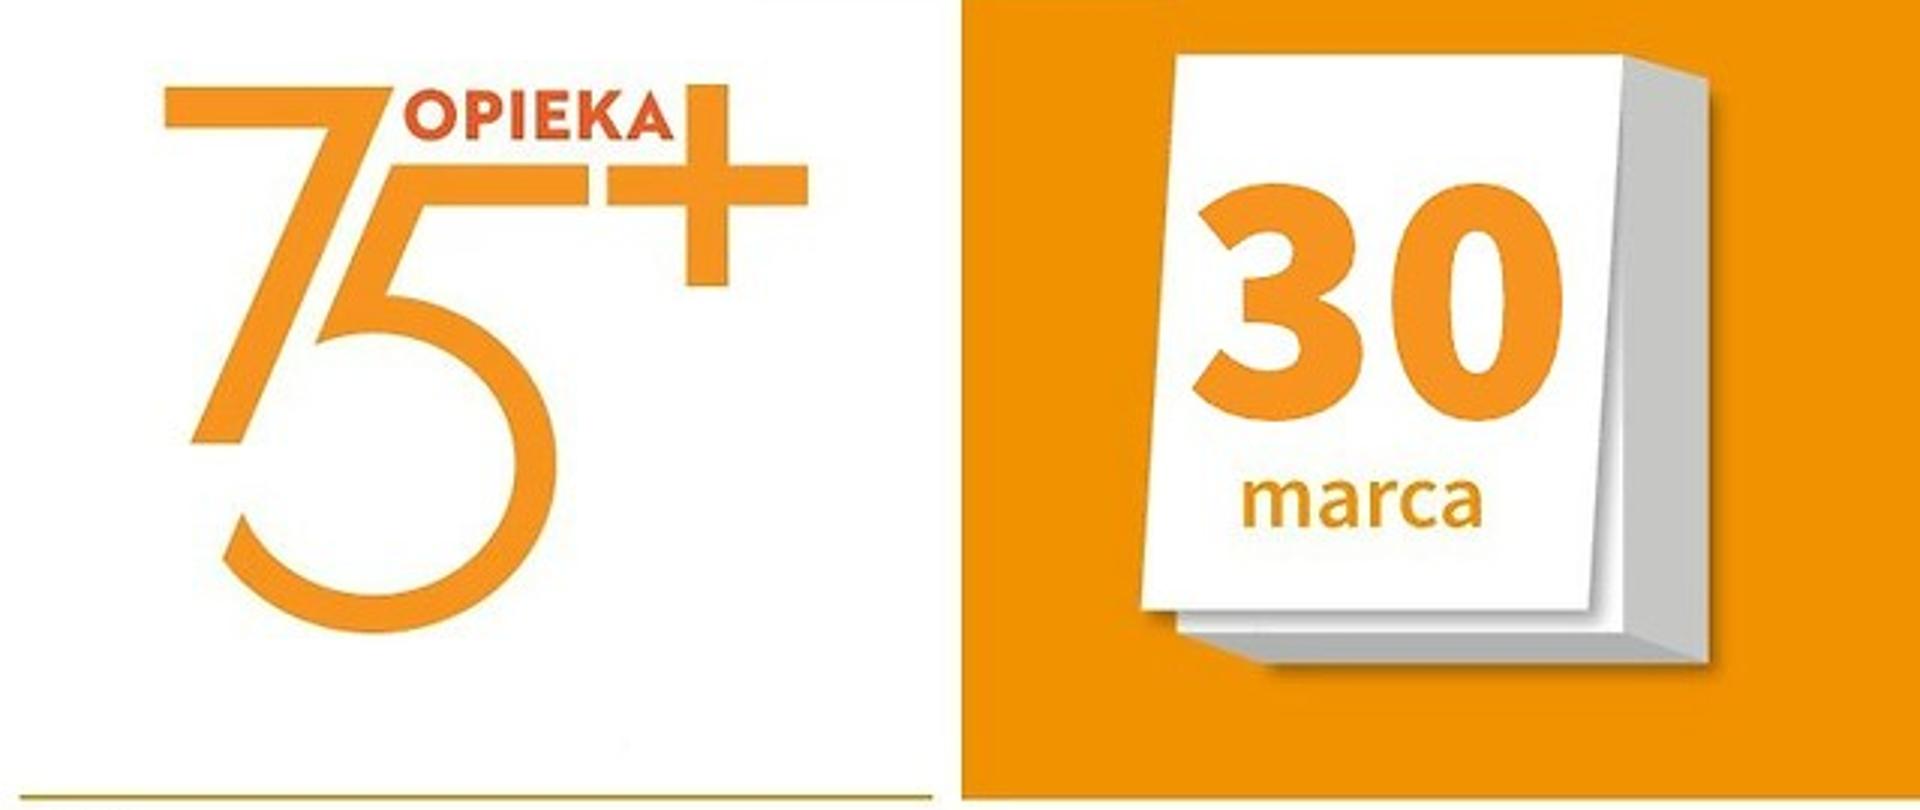 Dodatkowy nabór "Opieka 75+" do 30 marca 2018 r.